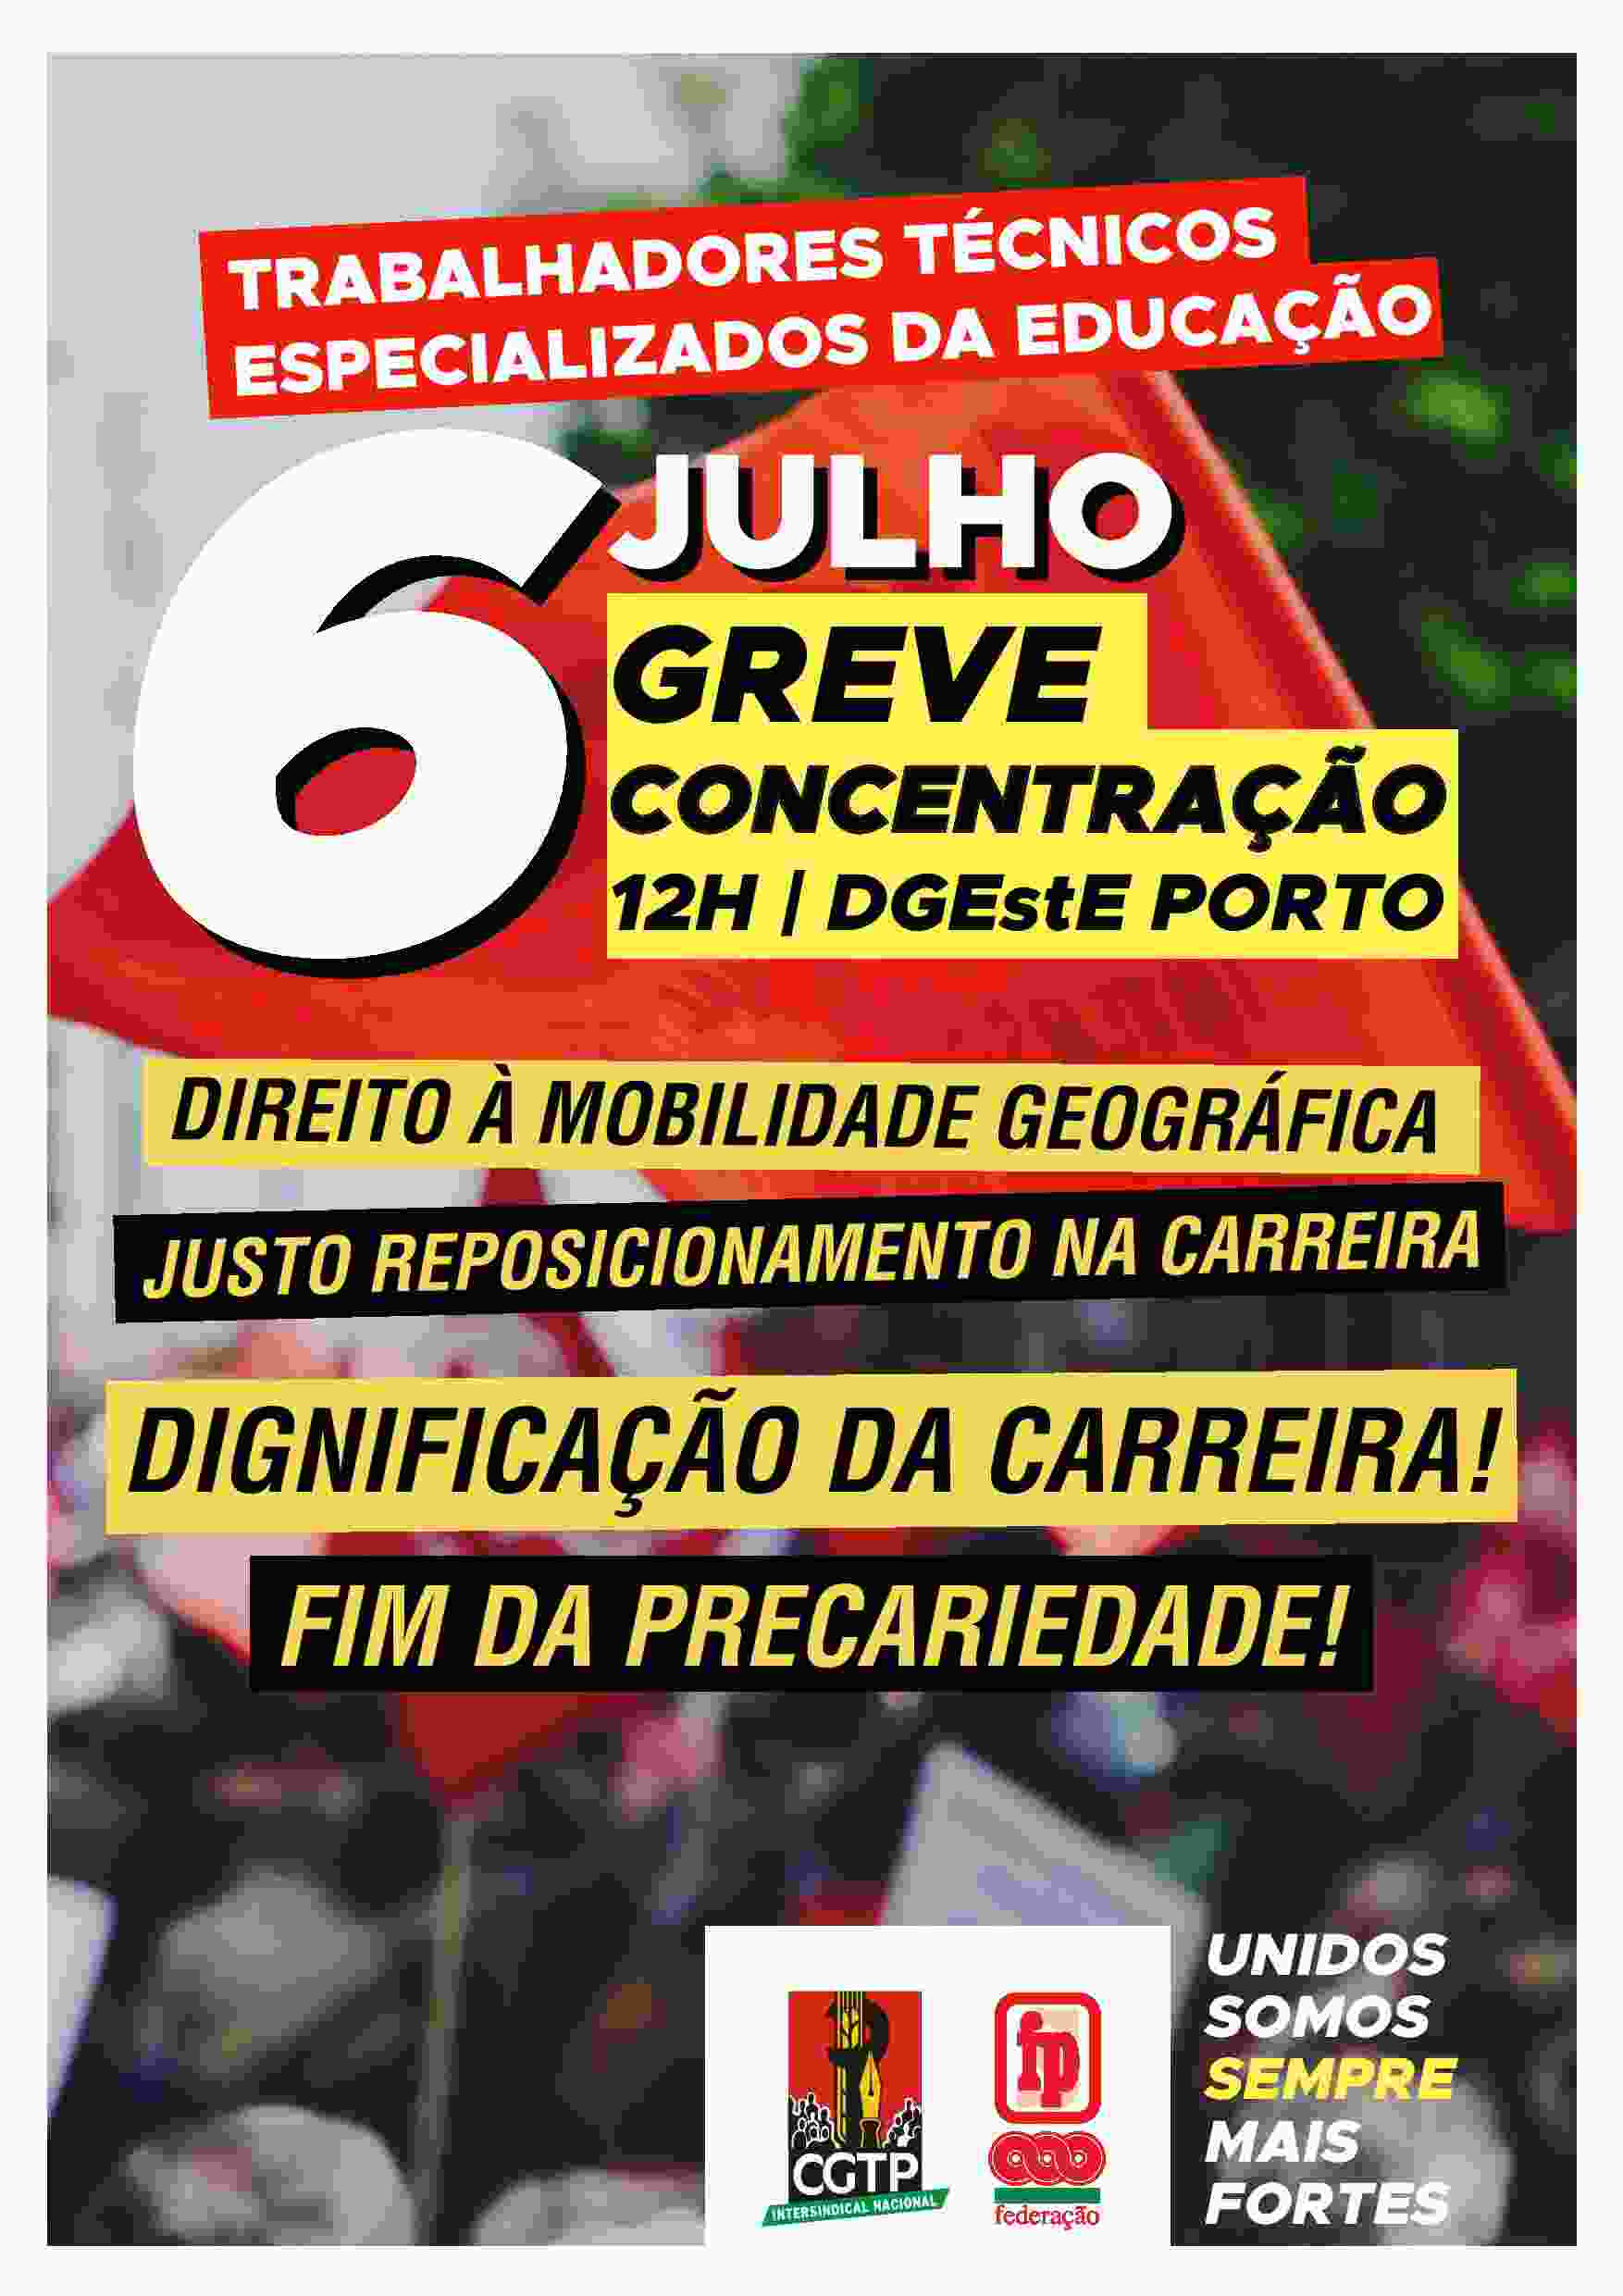 6 julho | Greve e concentração | 12h DGEstE Porto